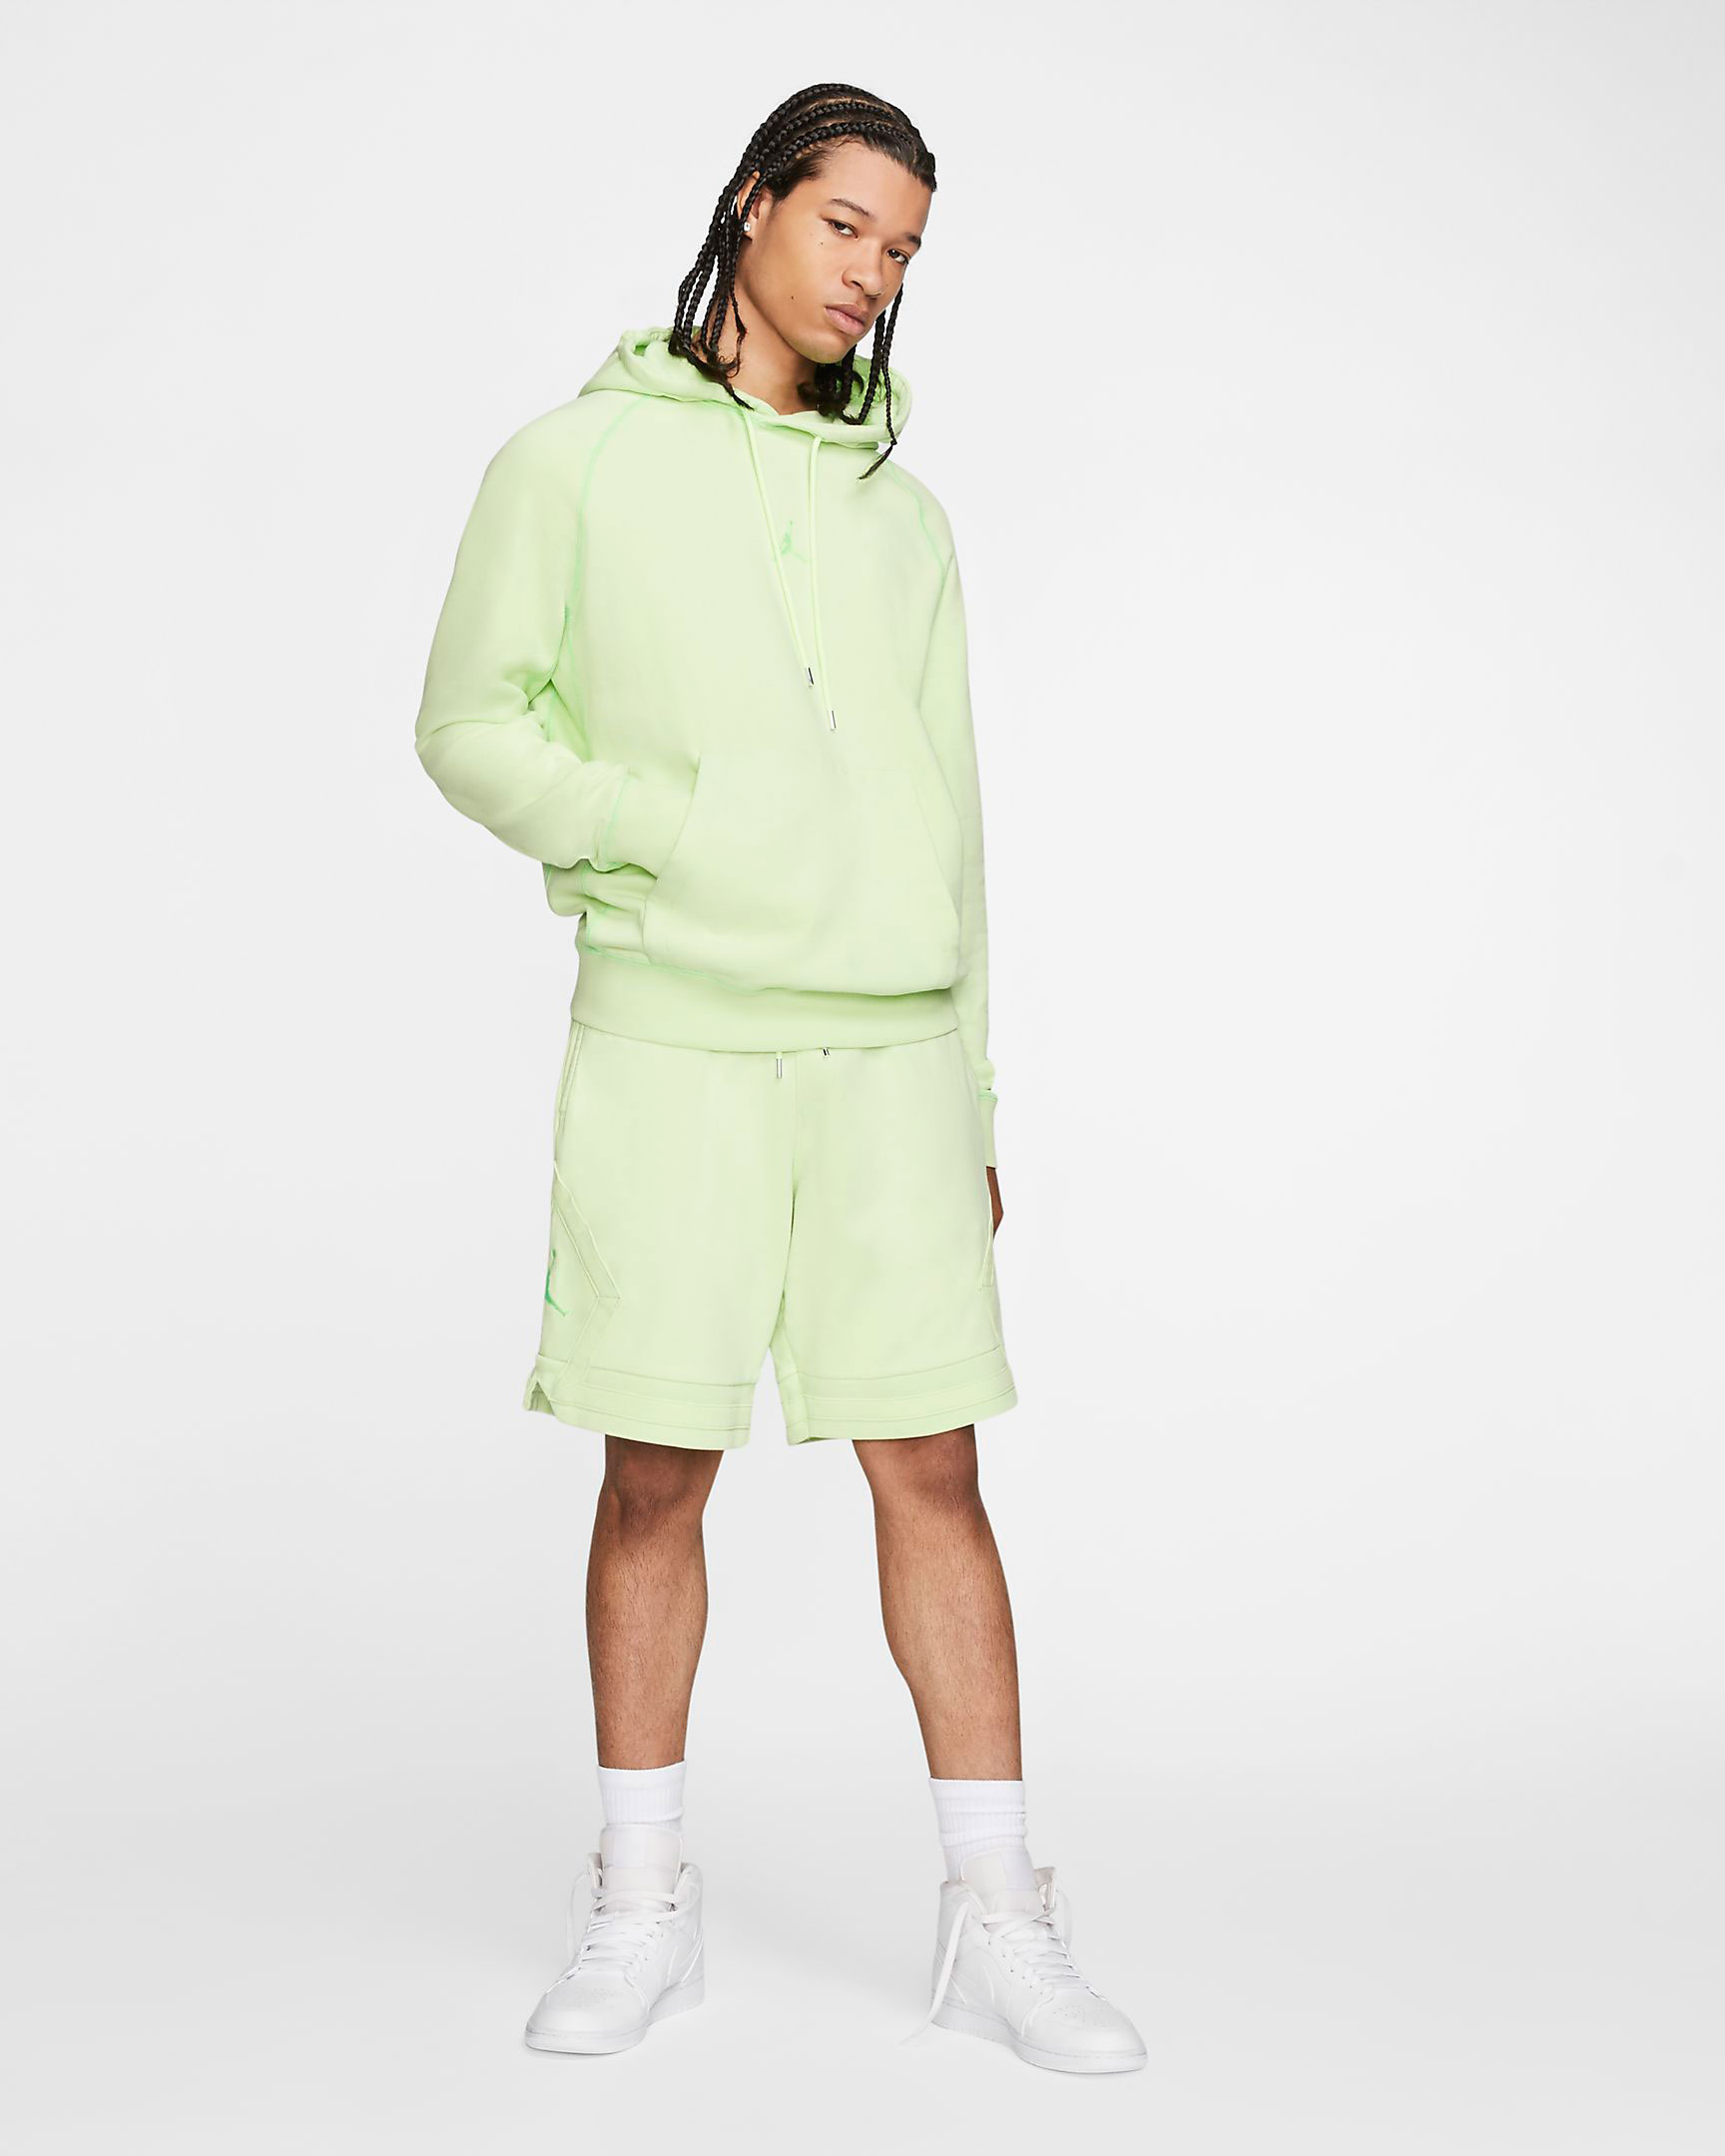 lime green jordan hoodie